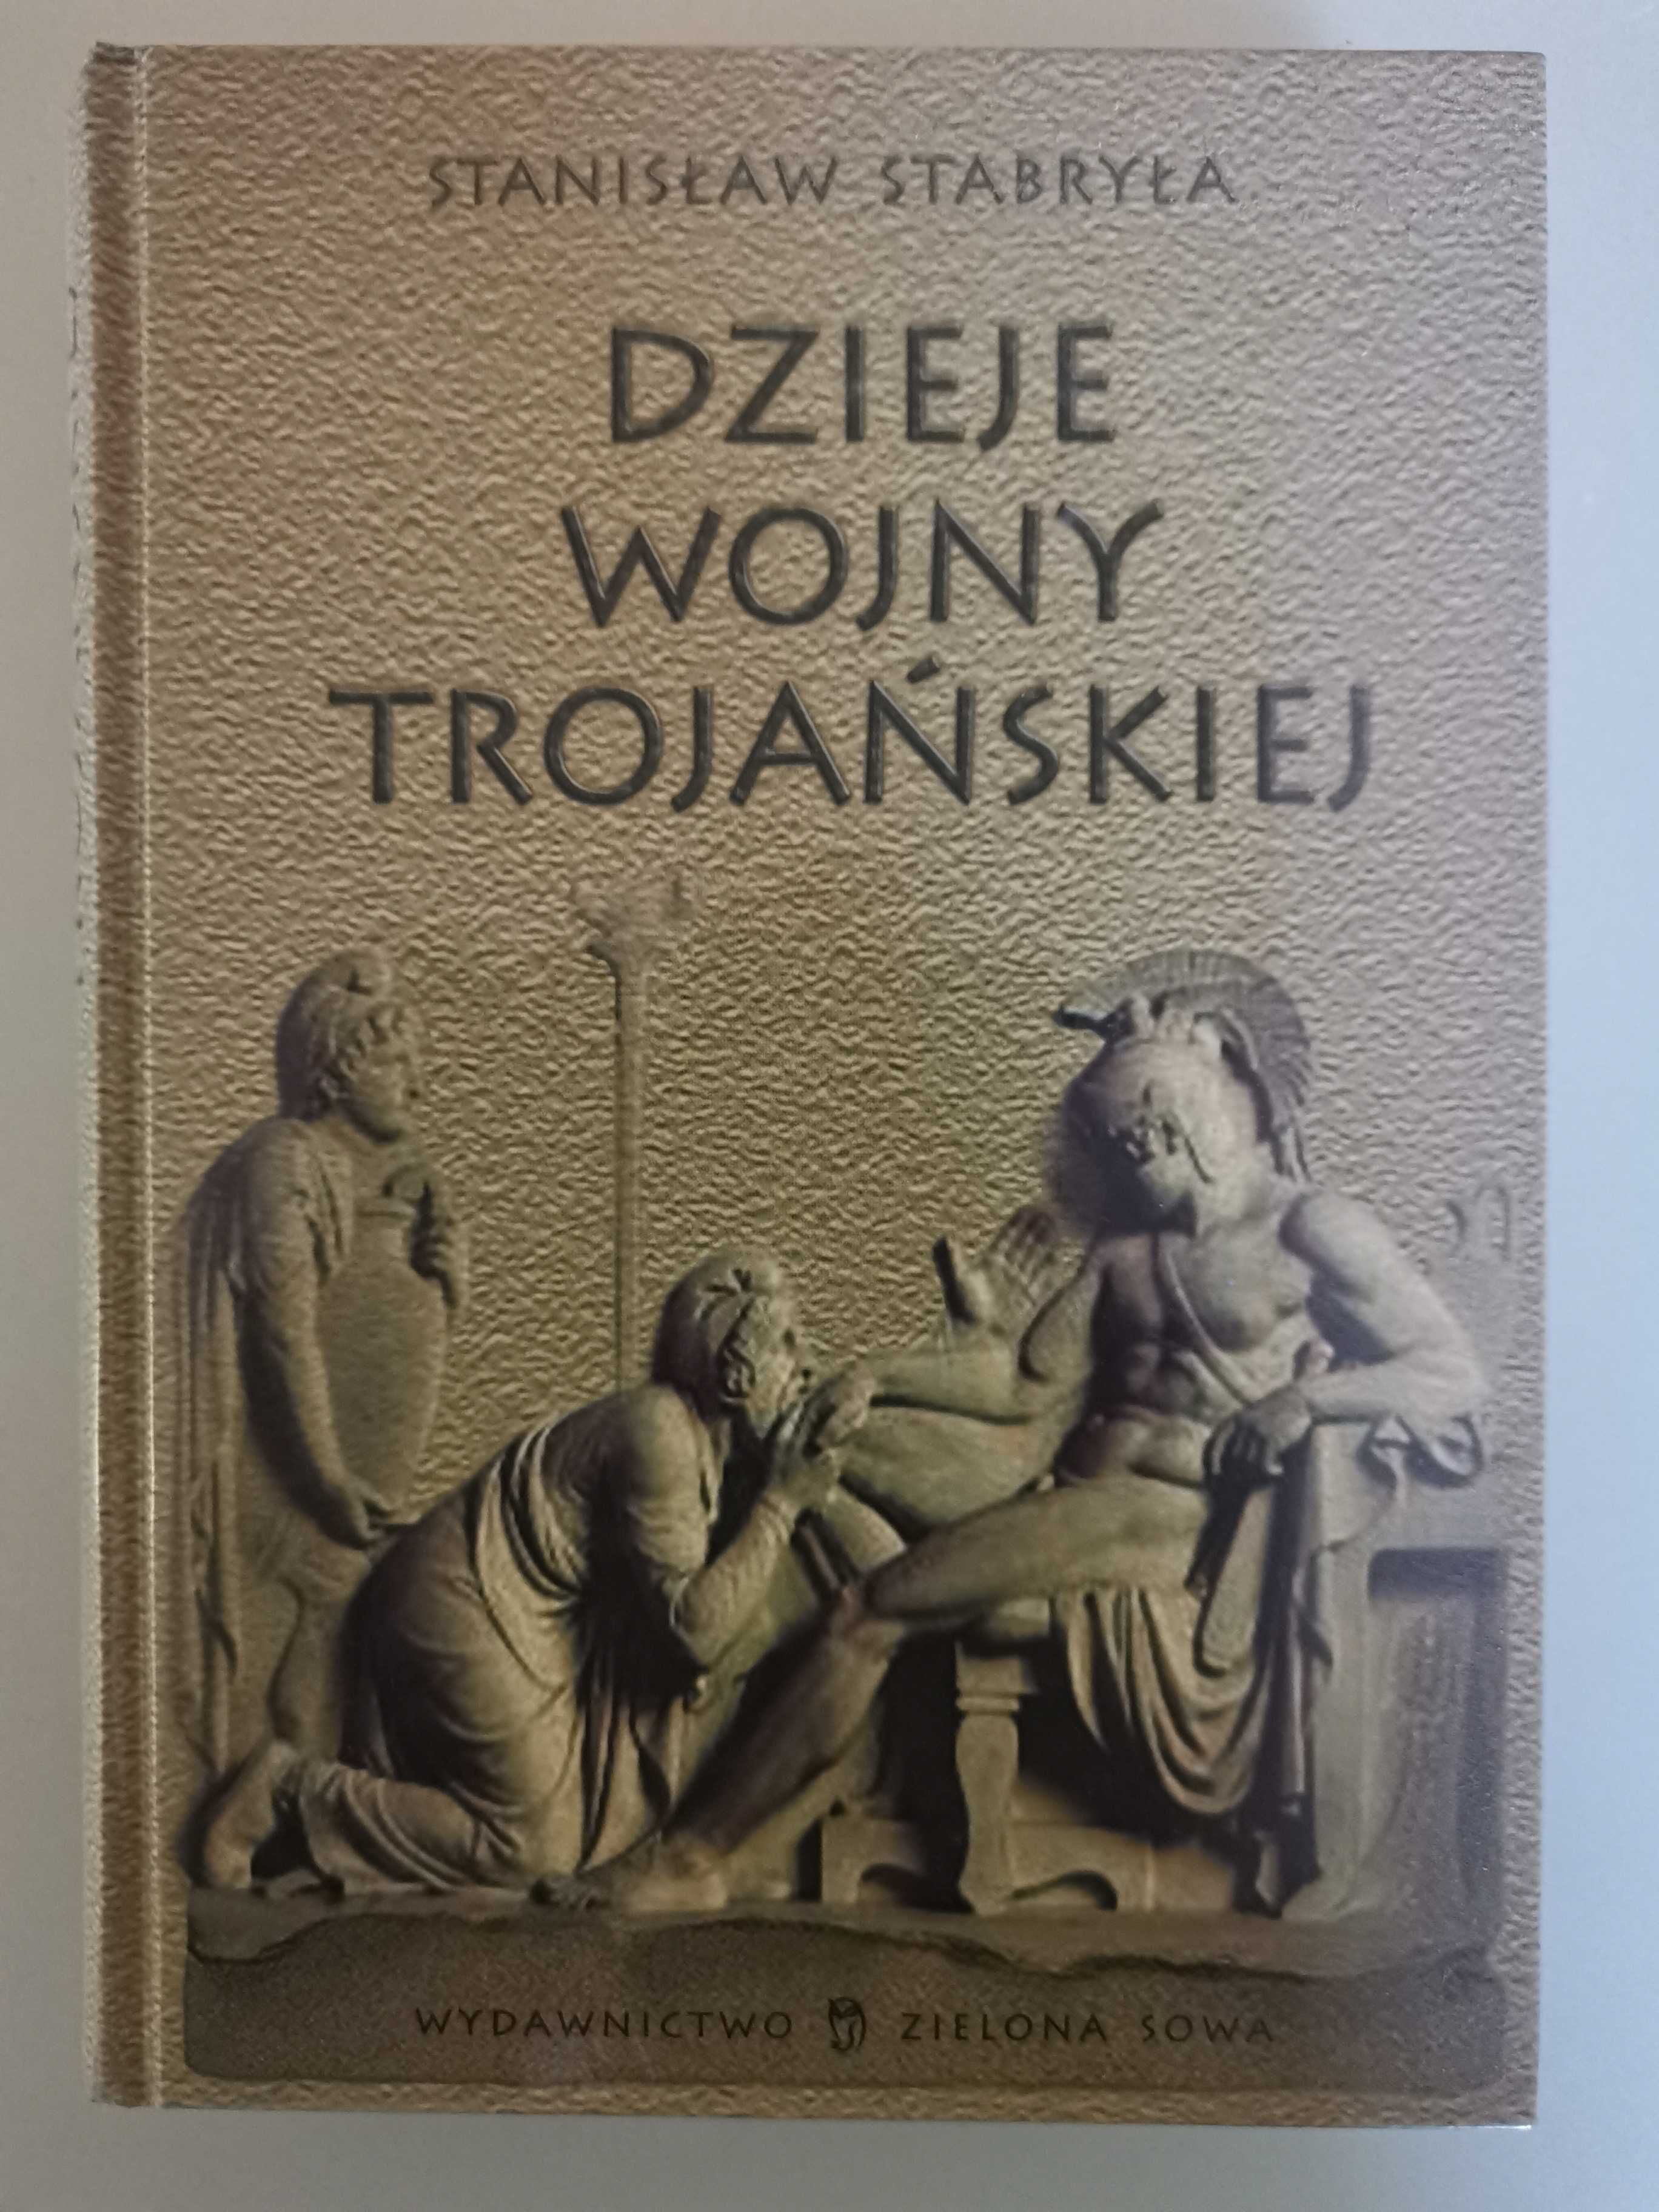 Stanisław Stabryła "Dzieje wojny trojańskiej"